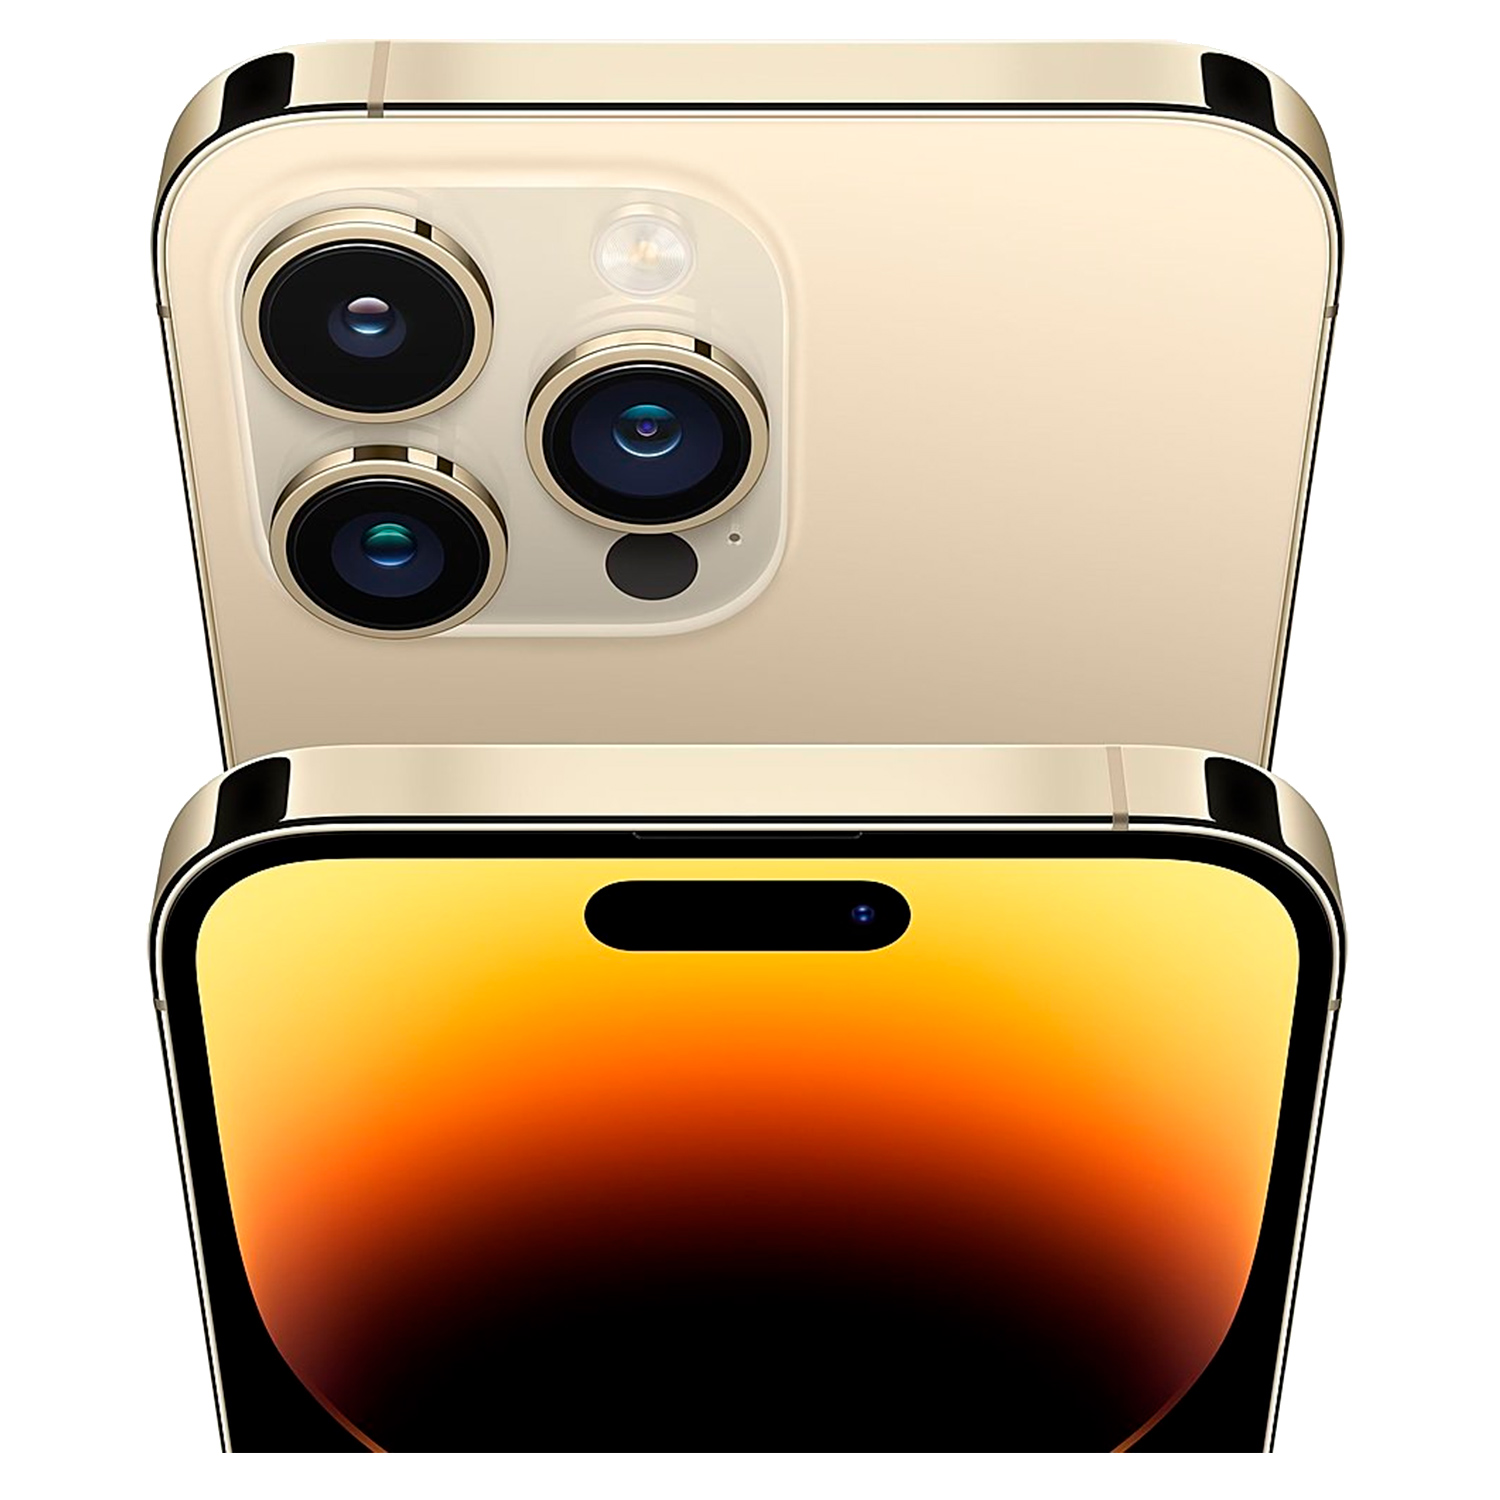 Apple iPhone 14 Pro *Swap A+* 256GB eSIM Tela 6.1 - Dourado (Somente Aparelho)